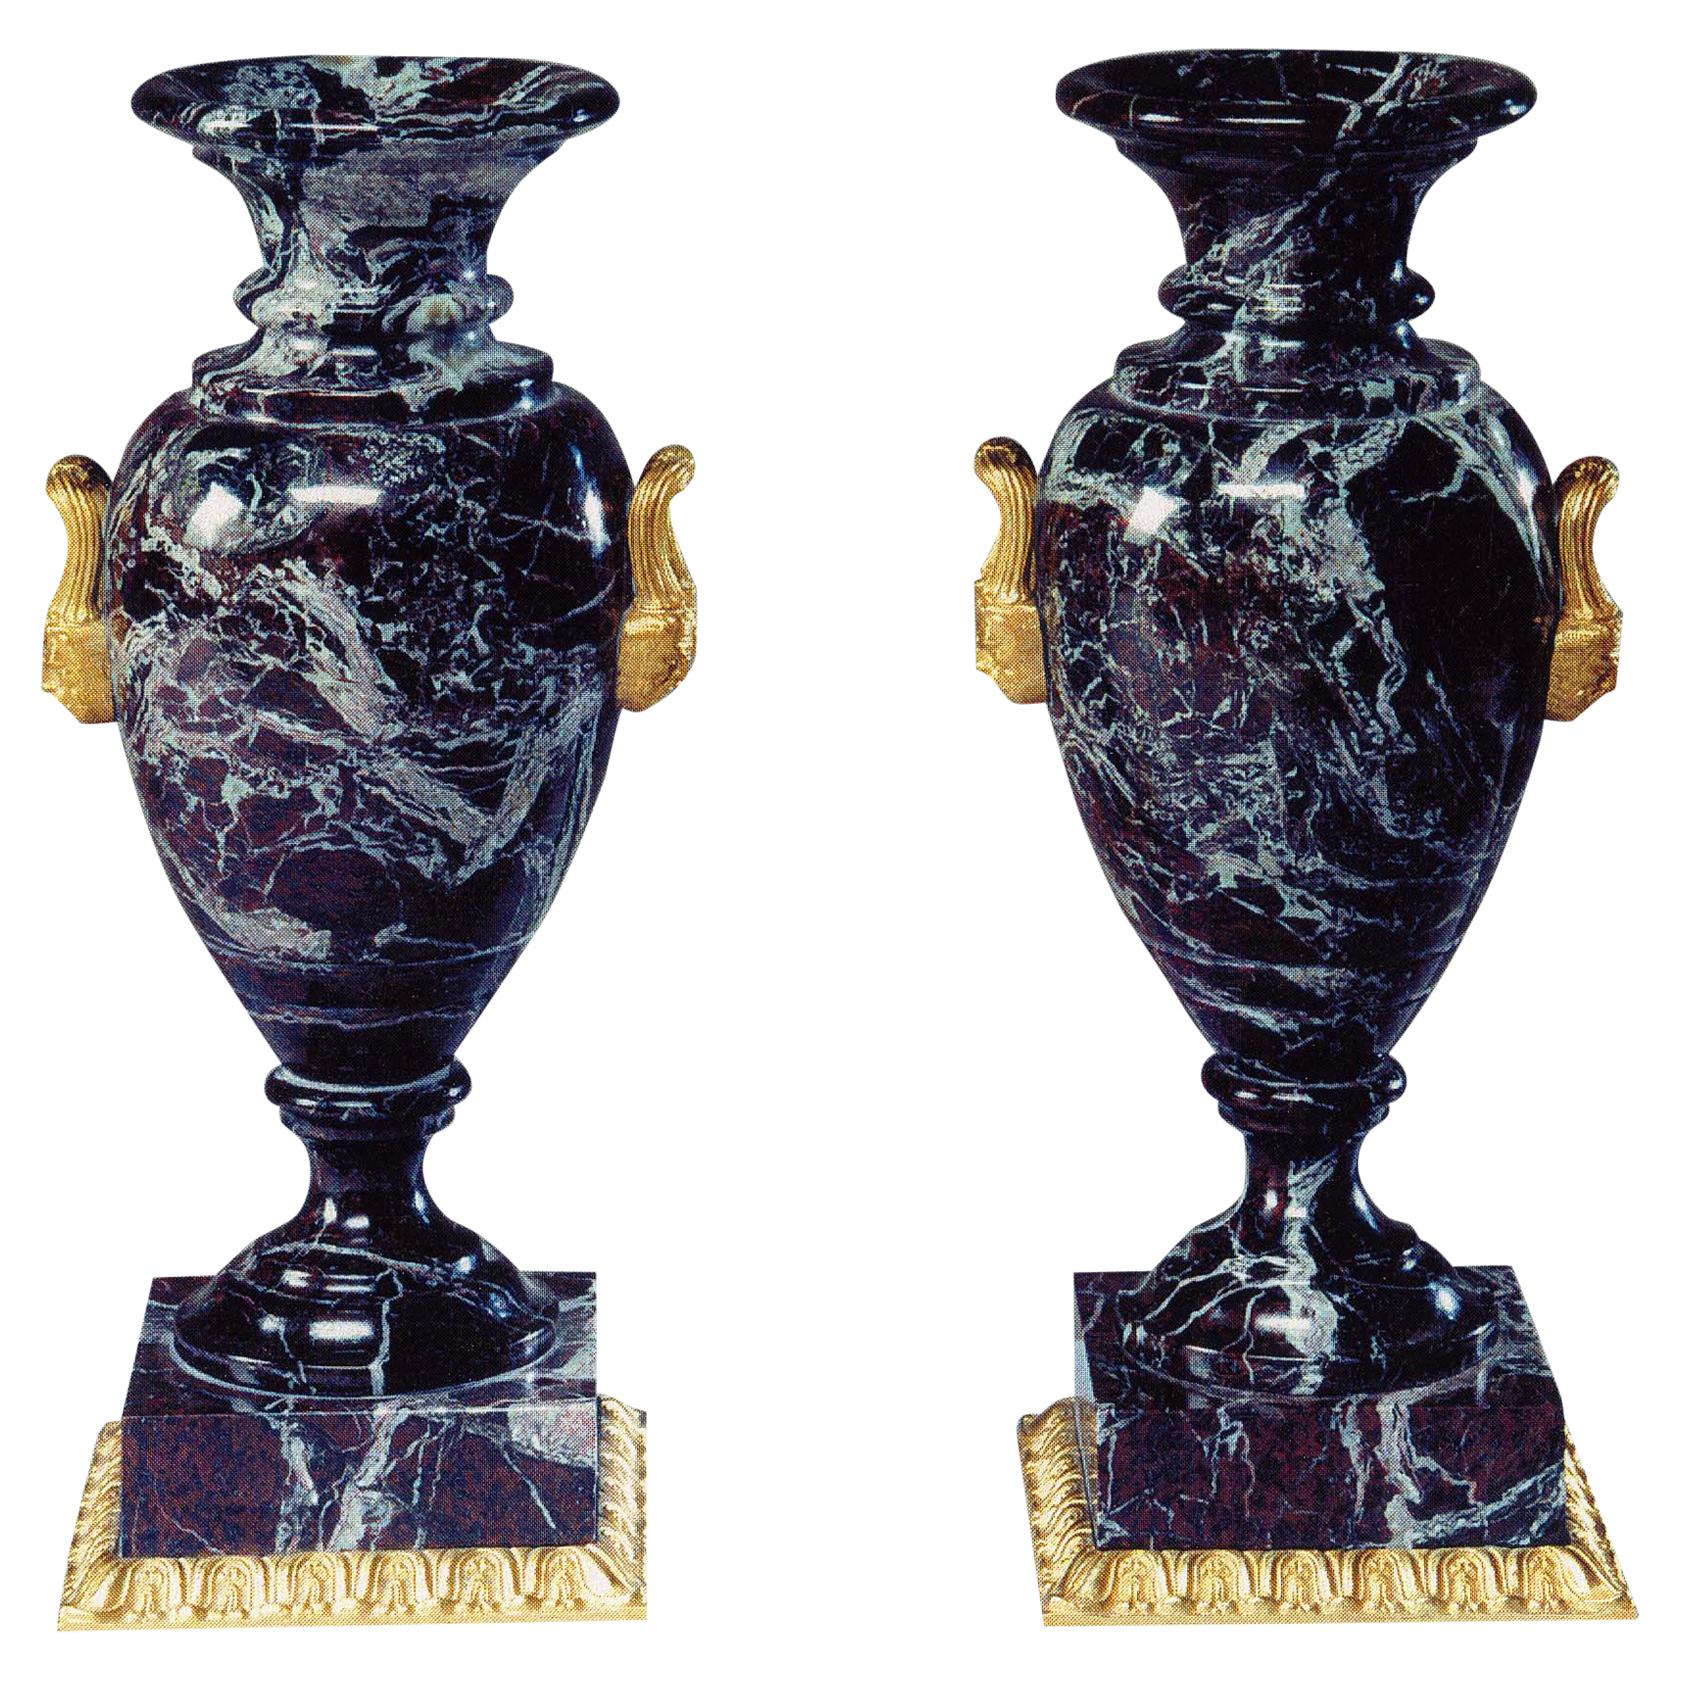 Neoclassical Style Marble and Bronze Vase by Gherardo Degli Albizzi